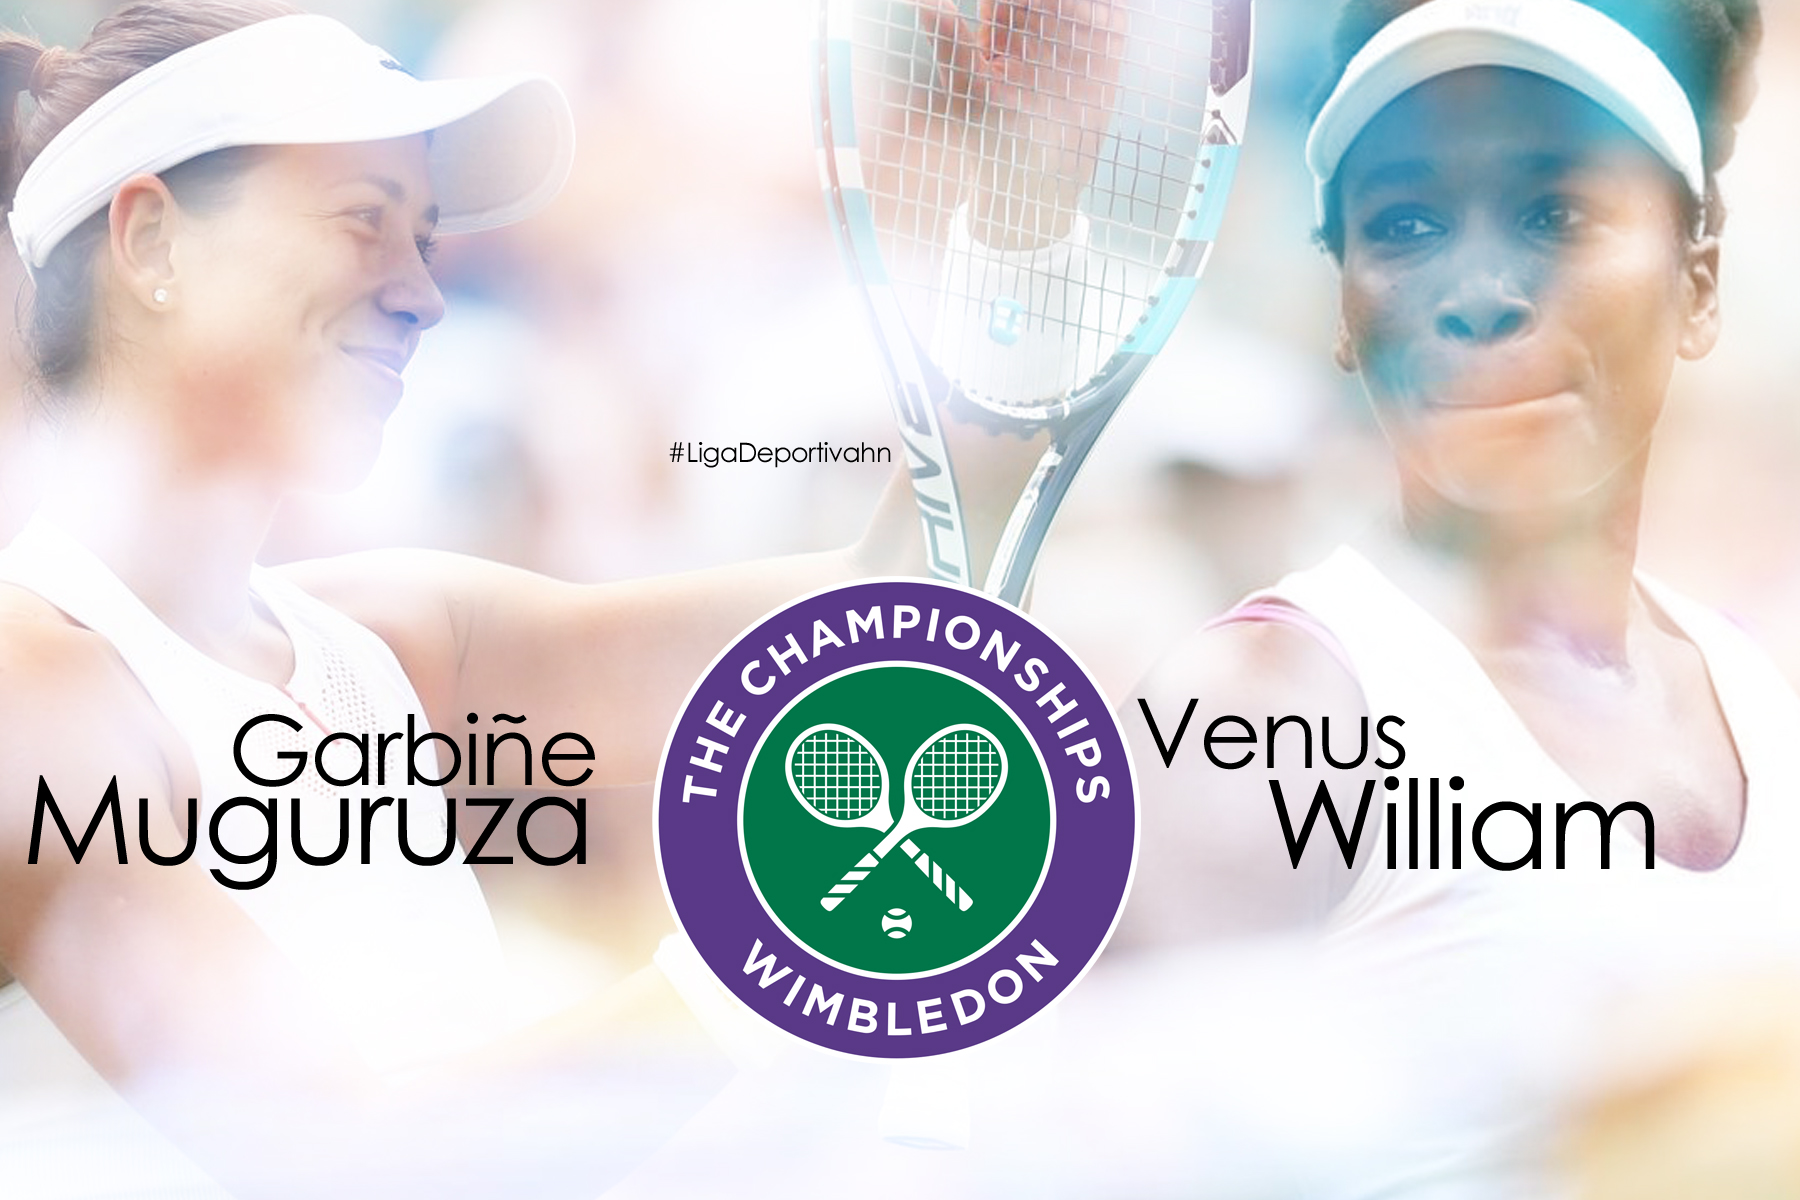 Garbiñe Muguruza y Venus William se enfrentaran en la final de Wimbledon 